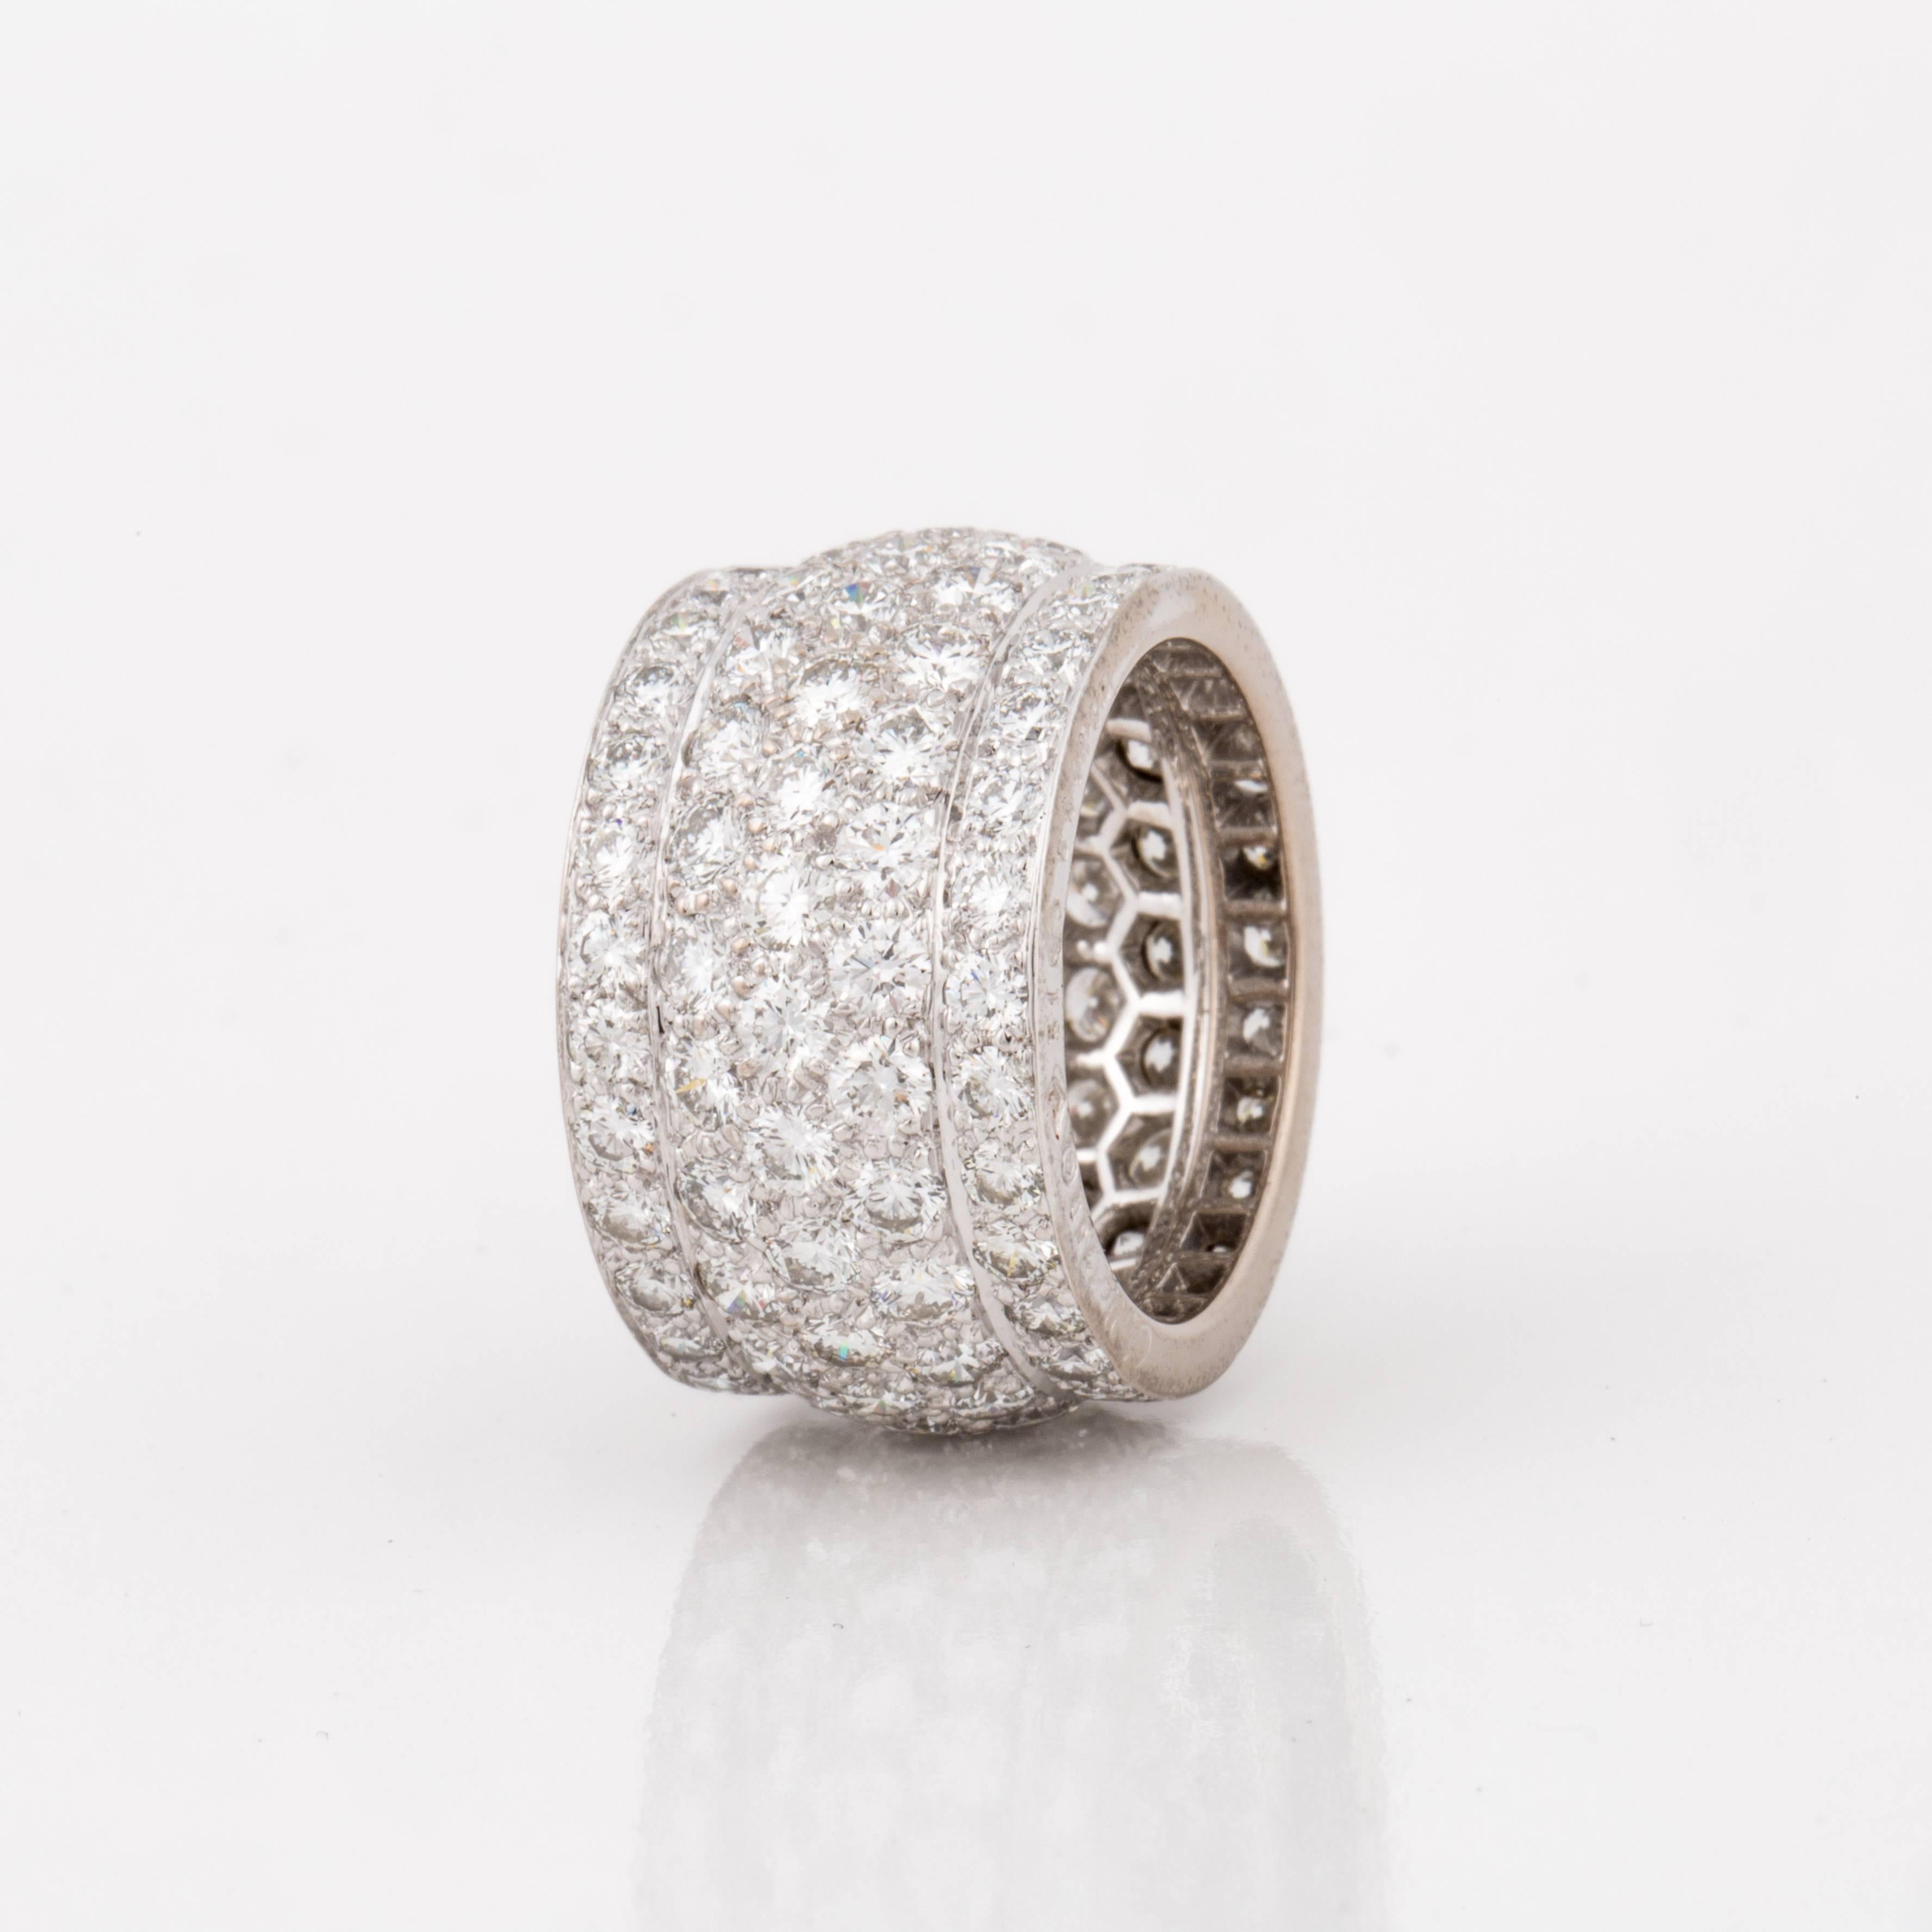 Large anneau d'éternité Cartier de la Collection Nigeria en or blanc 18K avec diamants ronds de taille brillant.  Il y a 125 diamants qui totalisent 5,65 carats ; couleur F-G et clarté VVS-VS1.  La bague est une taille américaine 5 1/2 ou une taille